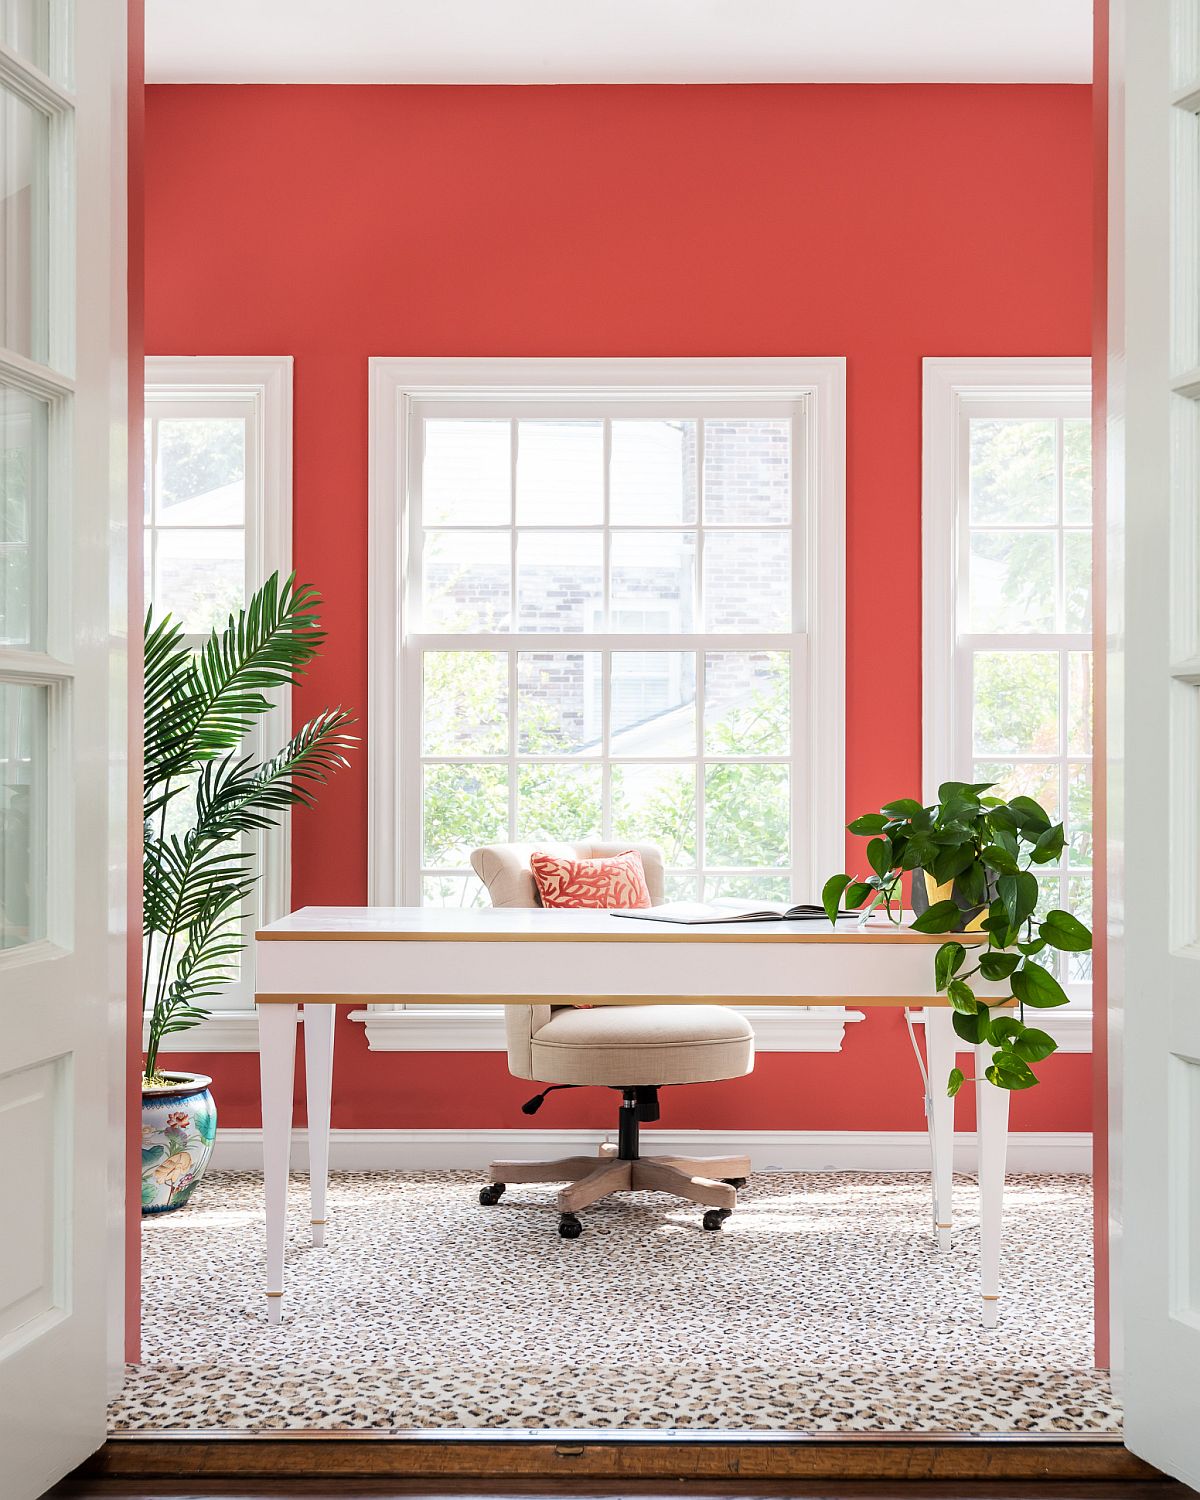 Sắc trắng - đỏ chủ đạo kết hợp ăn ý tạo nên tính thẩm mỹ tổng thể cực bắt mắt cho văn phòng tại nhà này.